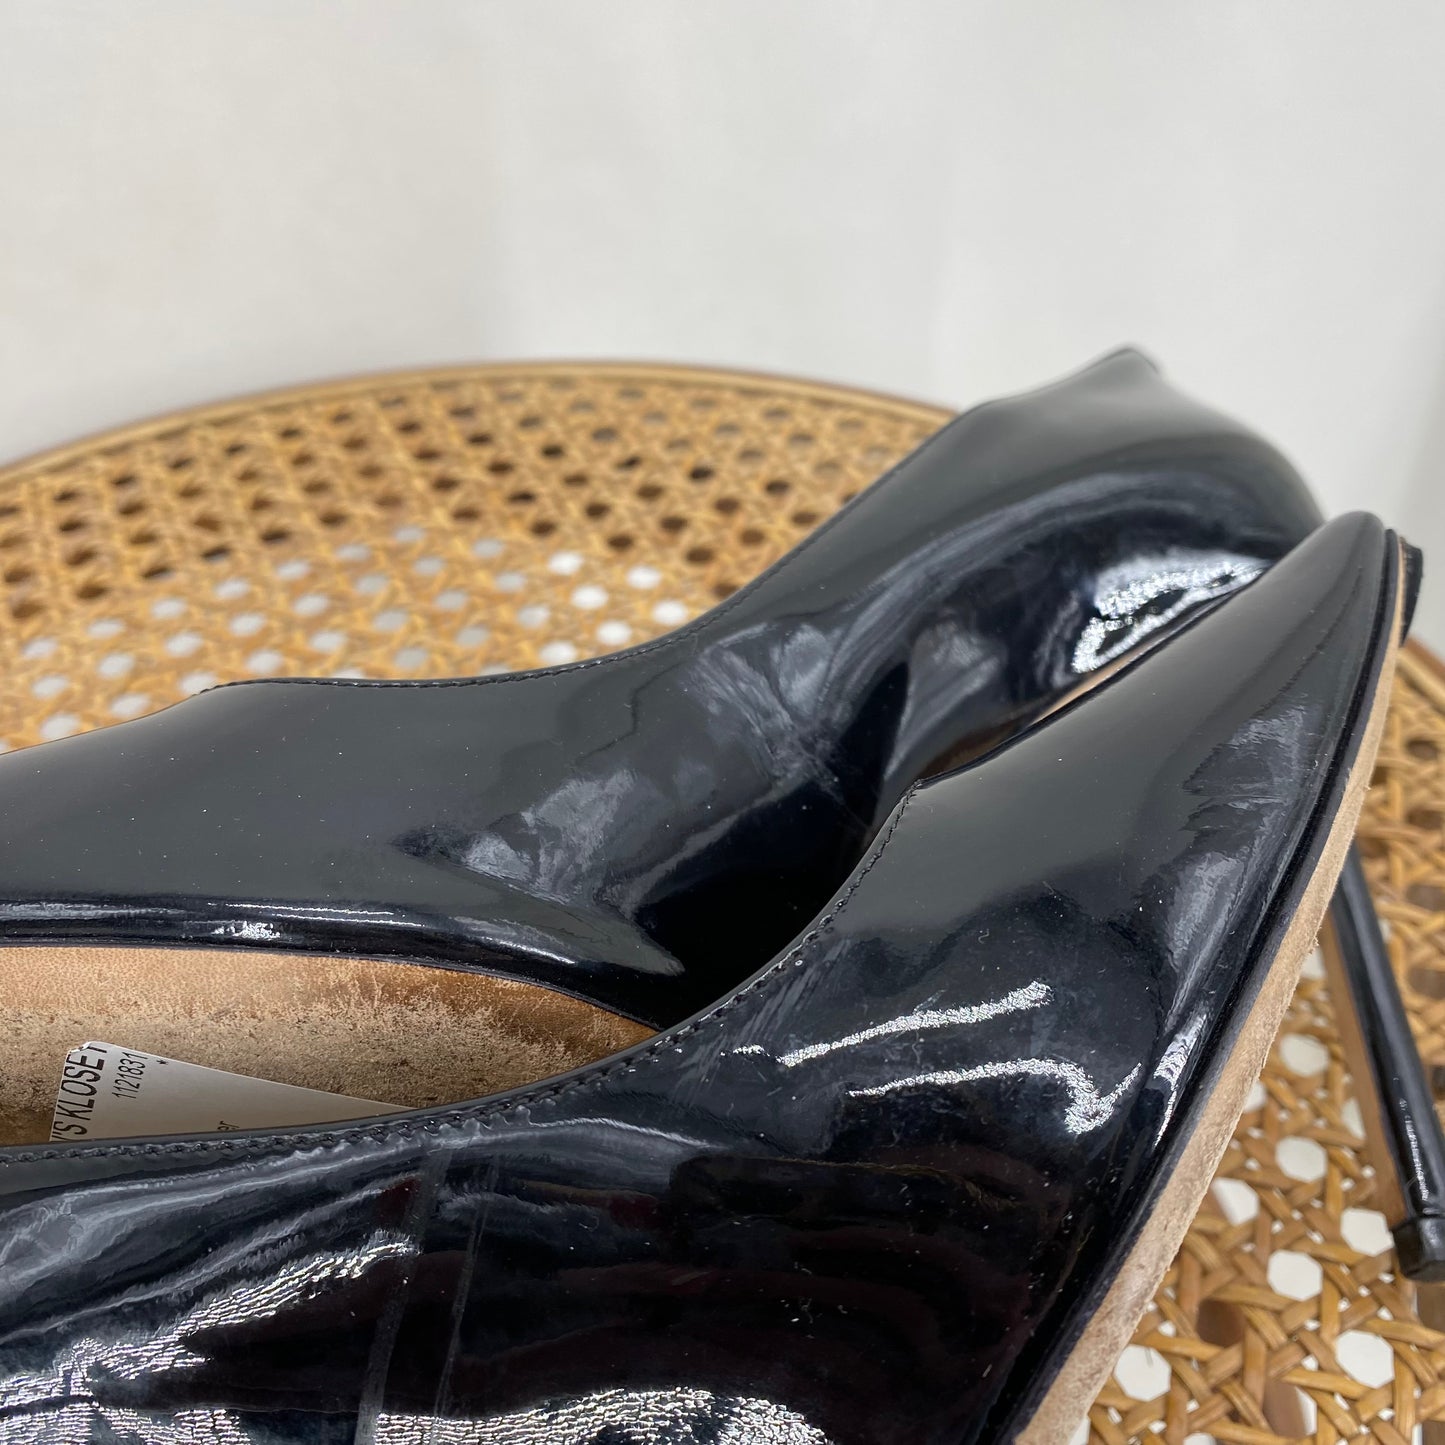 Black W Shoe Size 39 JIMMY CHOO Heels